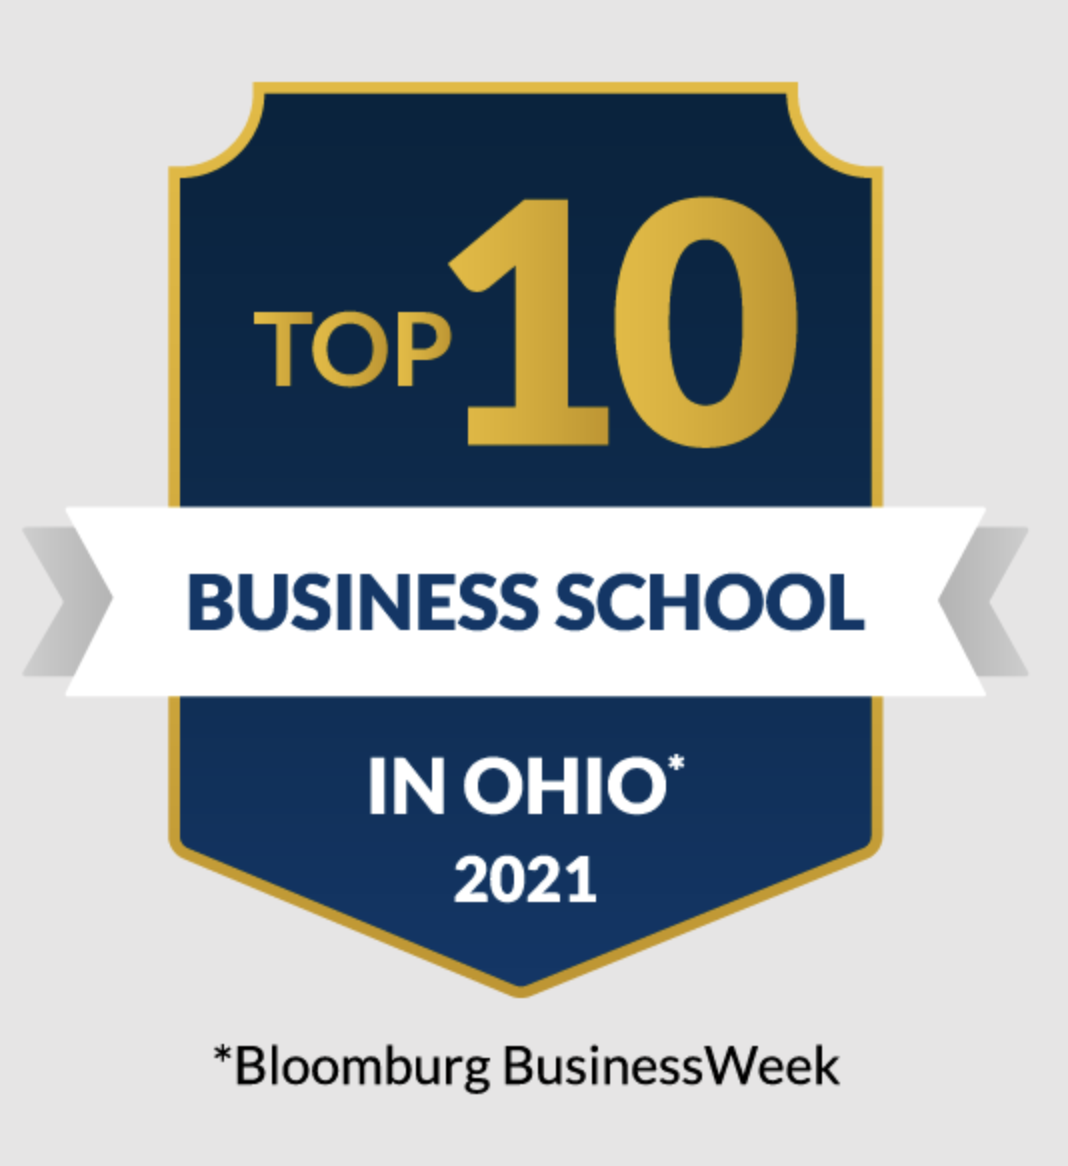 top 10 business school in ohio